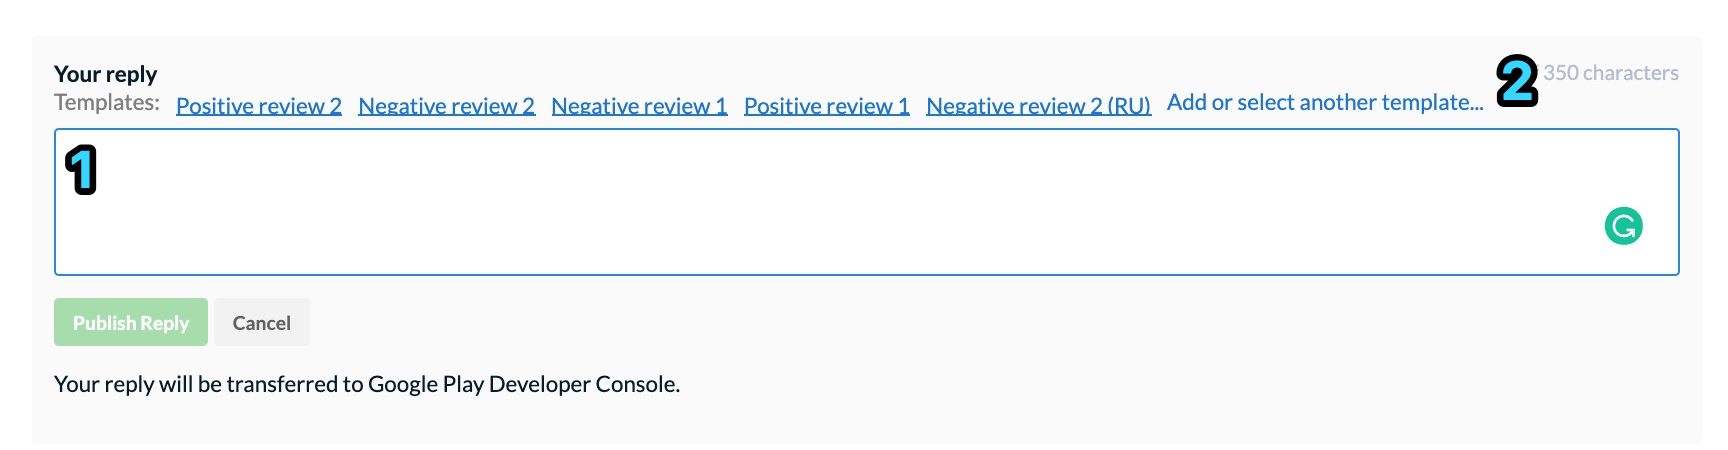 Reply_to_reviews.jpg